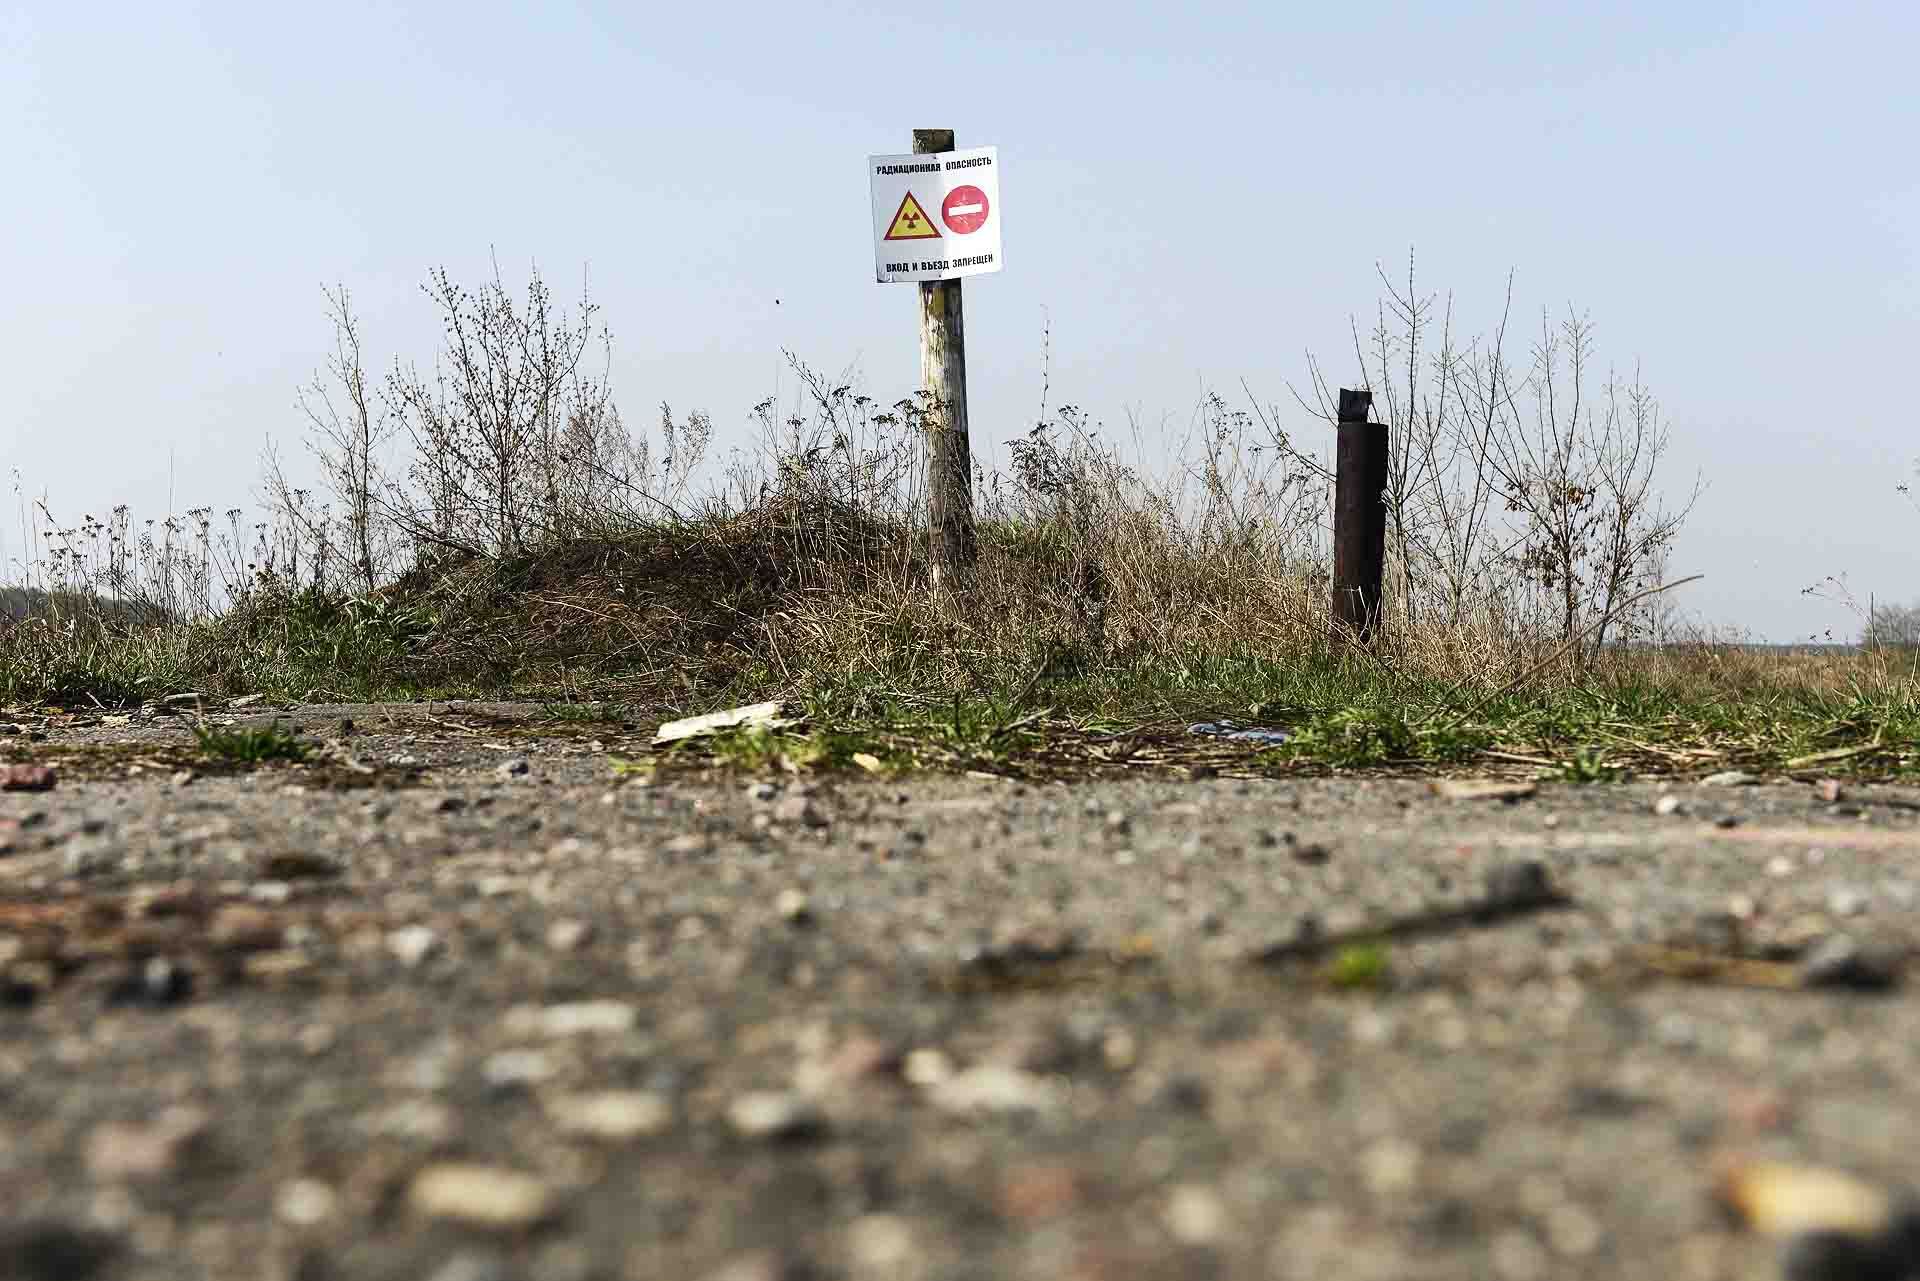 Acceso prohibido a la zona de exclusión, en la región de Gomel, al sureste de Bielorusia / Foto: Alfons Rodríguez